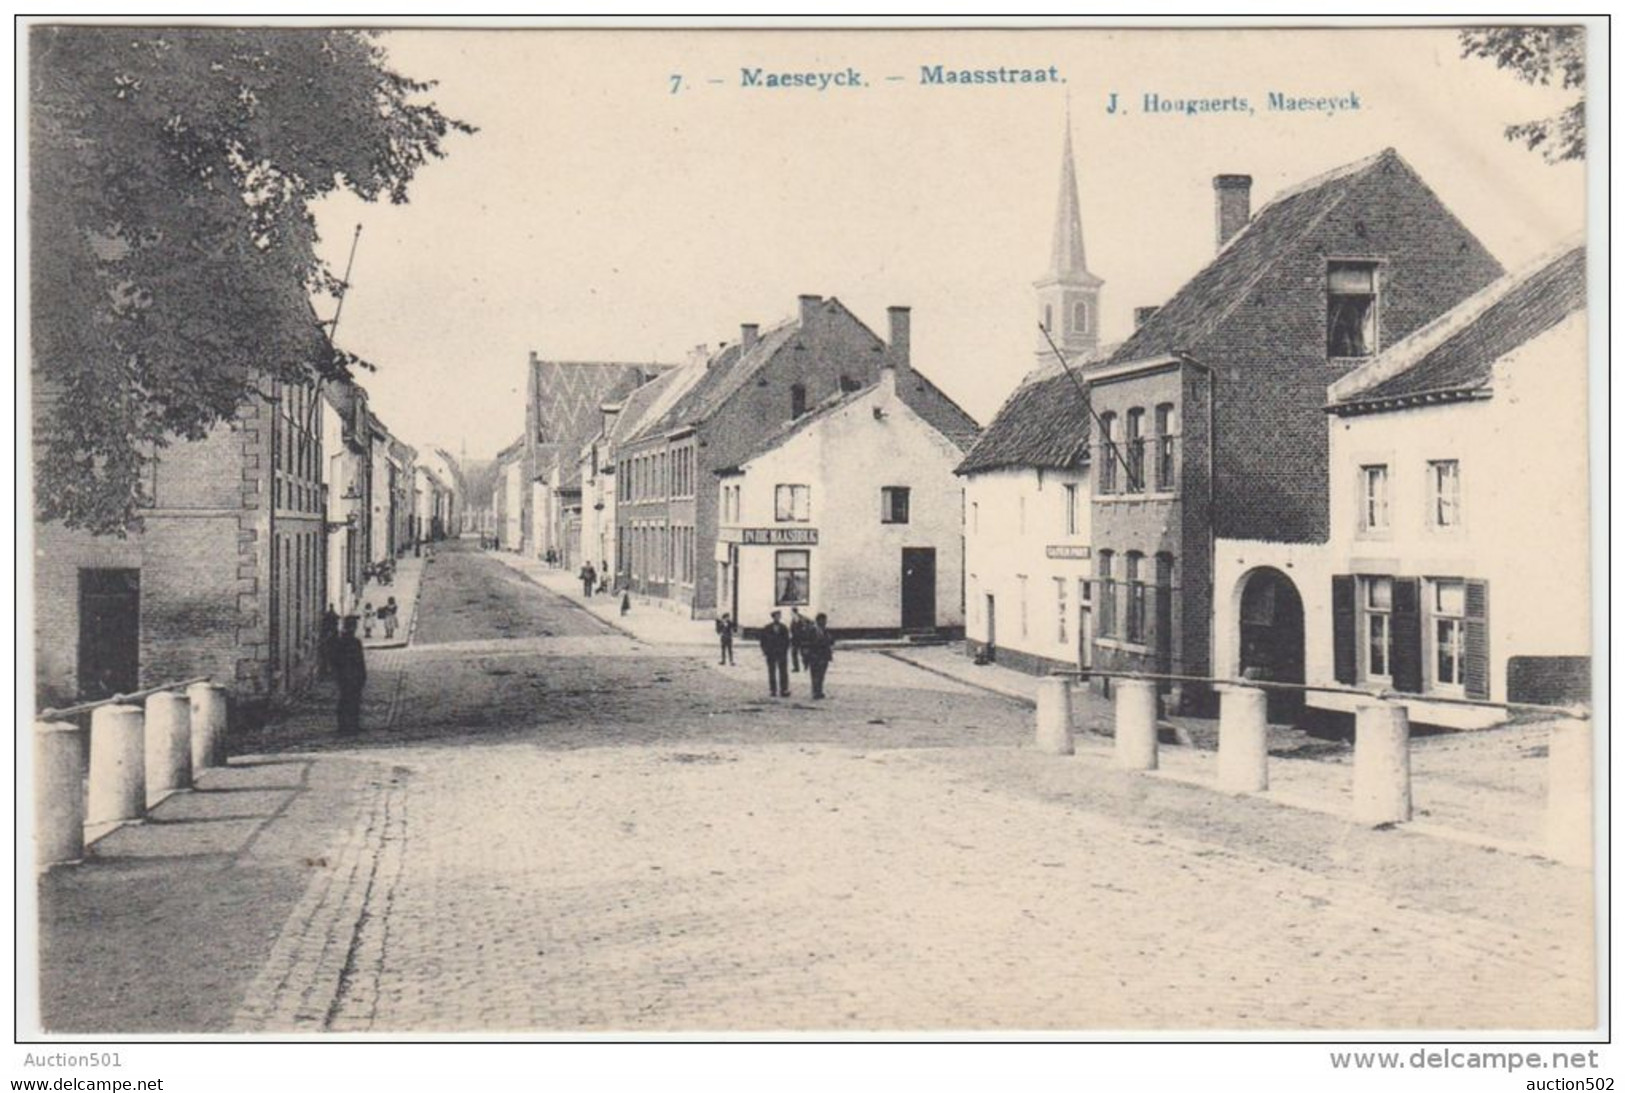 24379g  CAFE - PONT - "IN DE MAASBRUG" - MAASSTRAAT - Maeseyck - 1907 - Maaseik